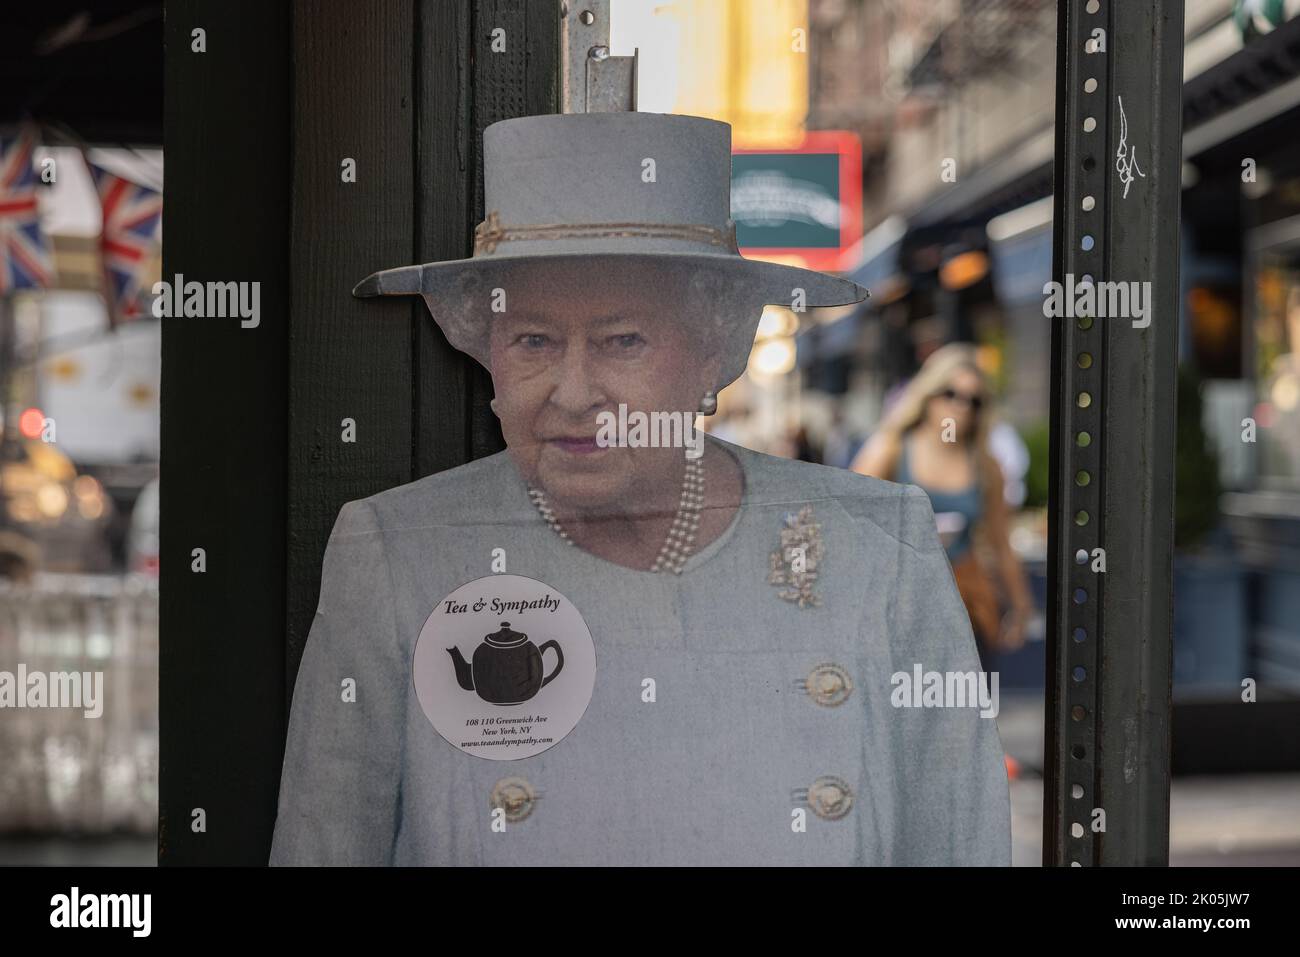 NUEVA YORK, N.Y. – 9 de septiembre de 2022: Un corte de la Reina Isabel II es visto en el restaurante Tea & Sympathy en Manhattan. Foto de stock